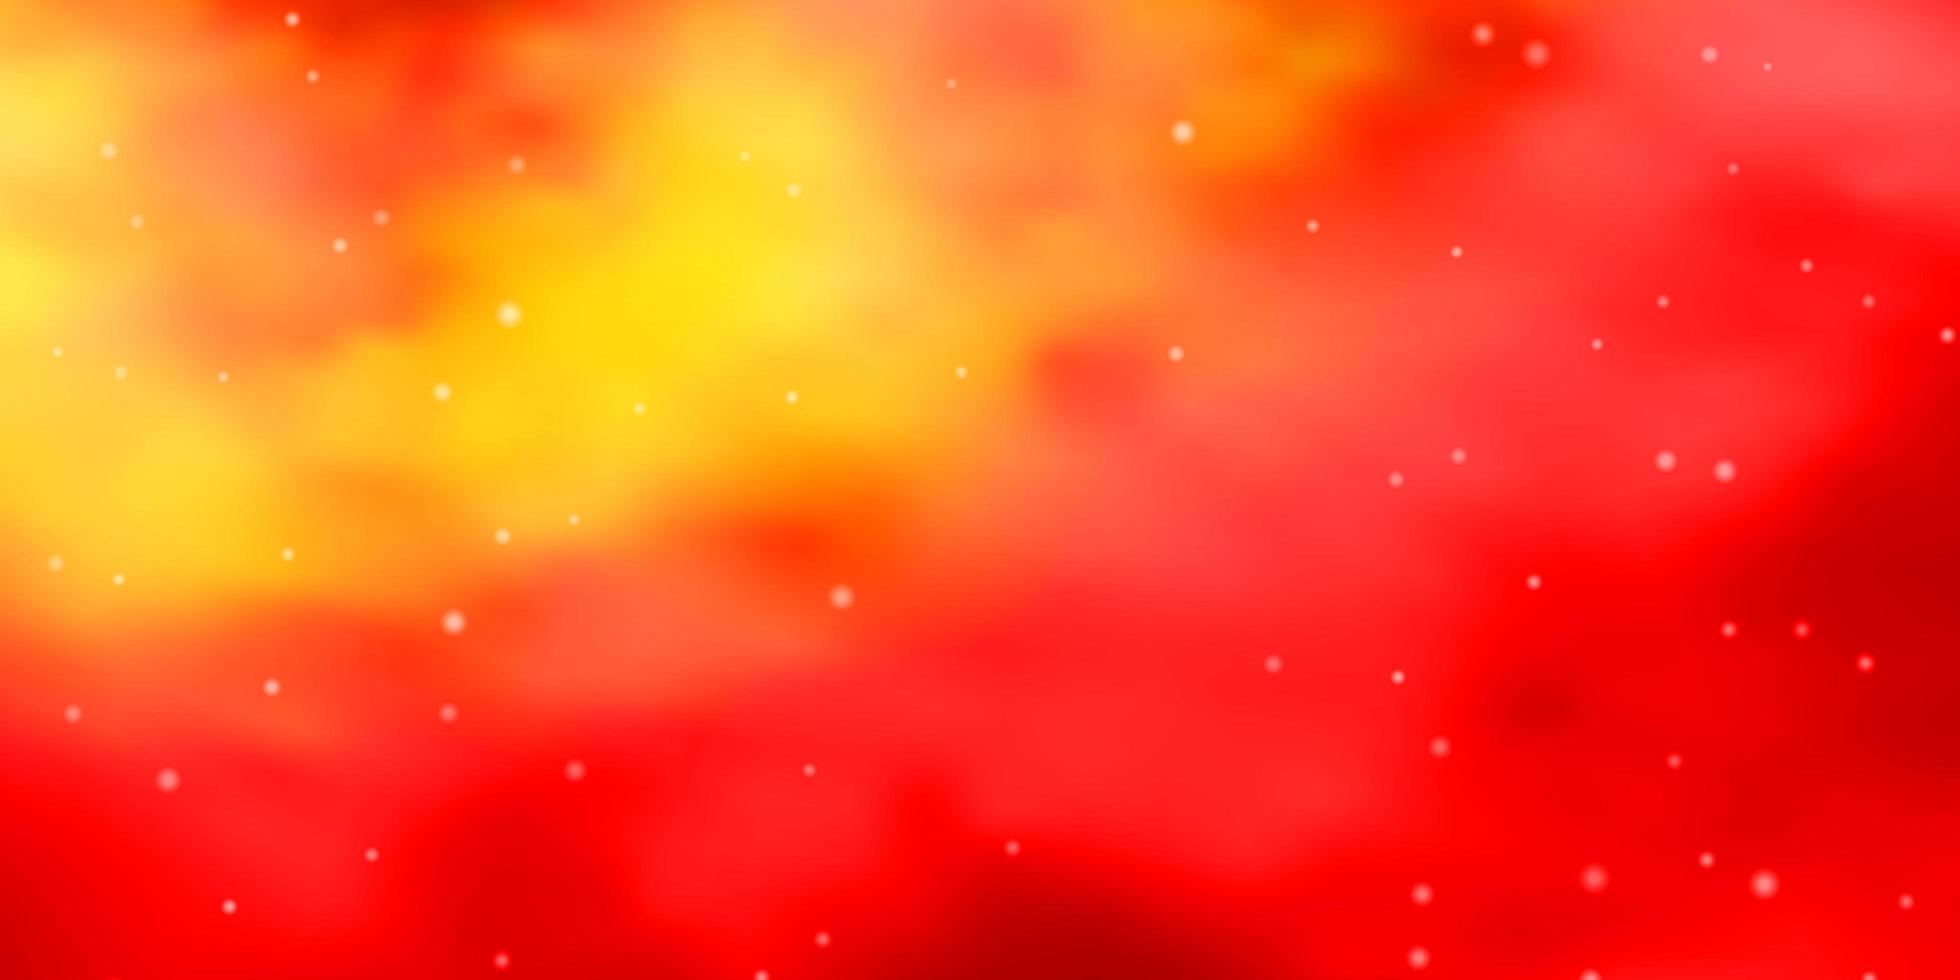 luz vermelha, amarelo padrão de vetor com estrelas abstratas desfocar design decorativo em estilo simples com estrelas. tema para telefones celulares.